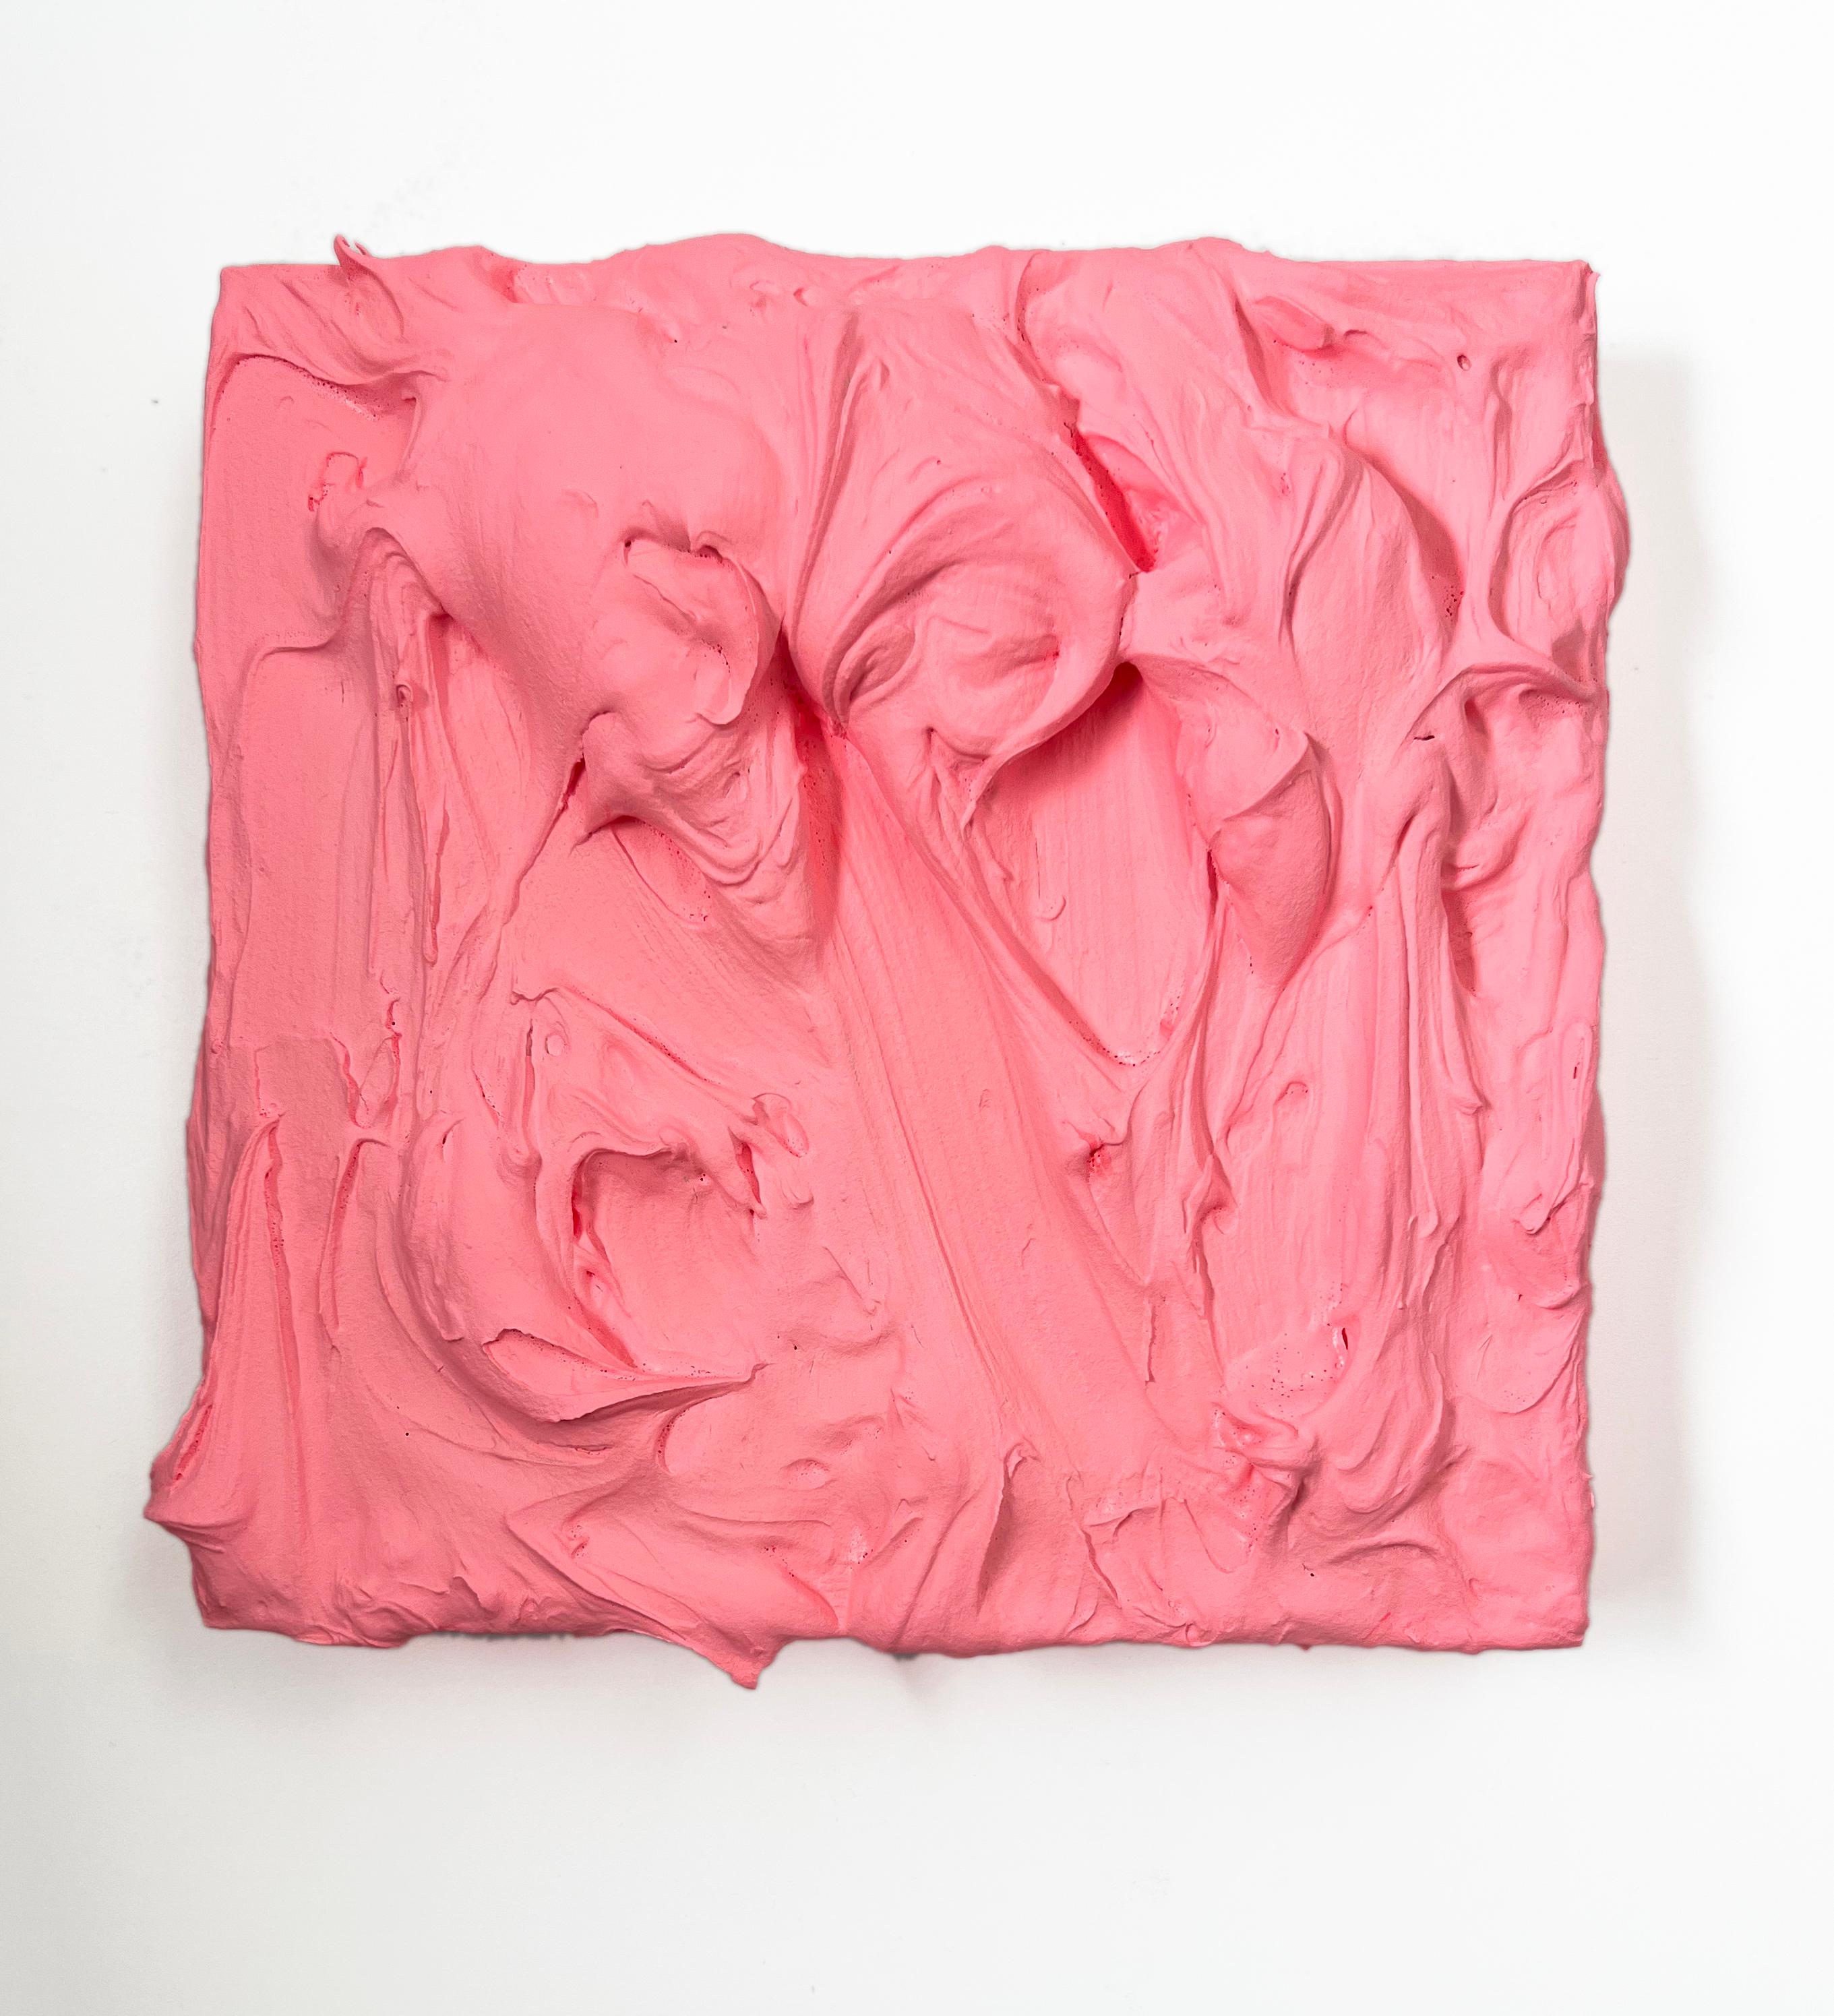 Chloe Hedden Abstract Painting –  80er Pfirsich Excess (rosafarbenes, mehrfarbiges, monochromes, quadratisches Gemälde im Pop-Design)